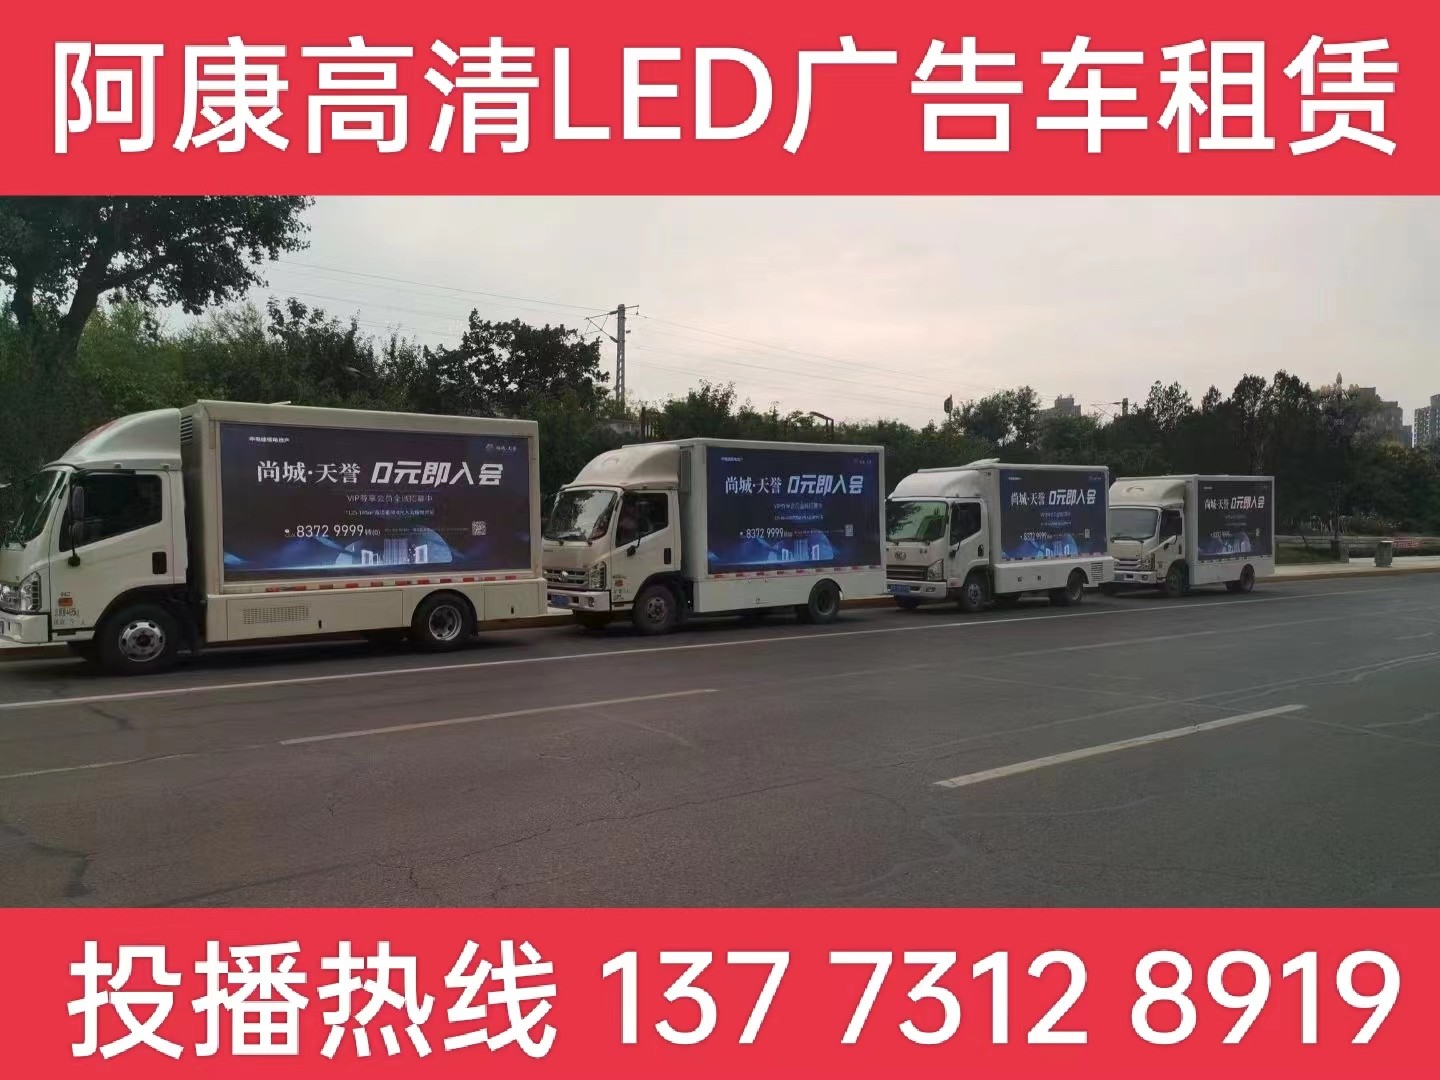 宜兴LED广告车出租-某房产公司效果展示